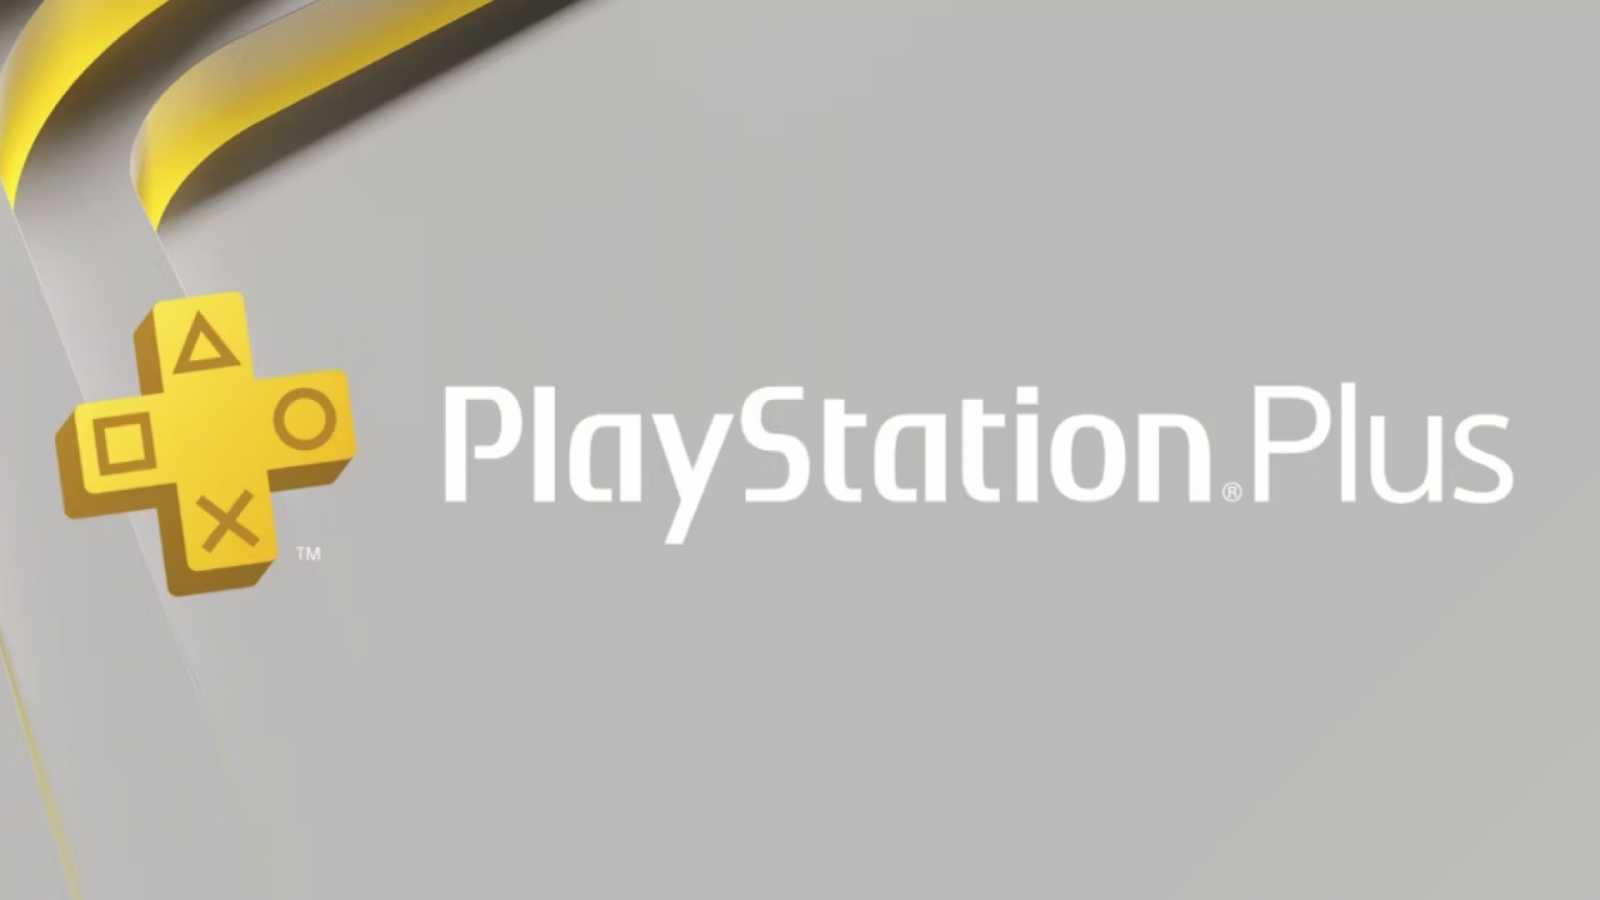 PlayStation Plus Premium a vše o něm